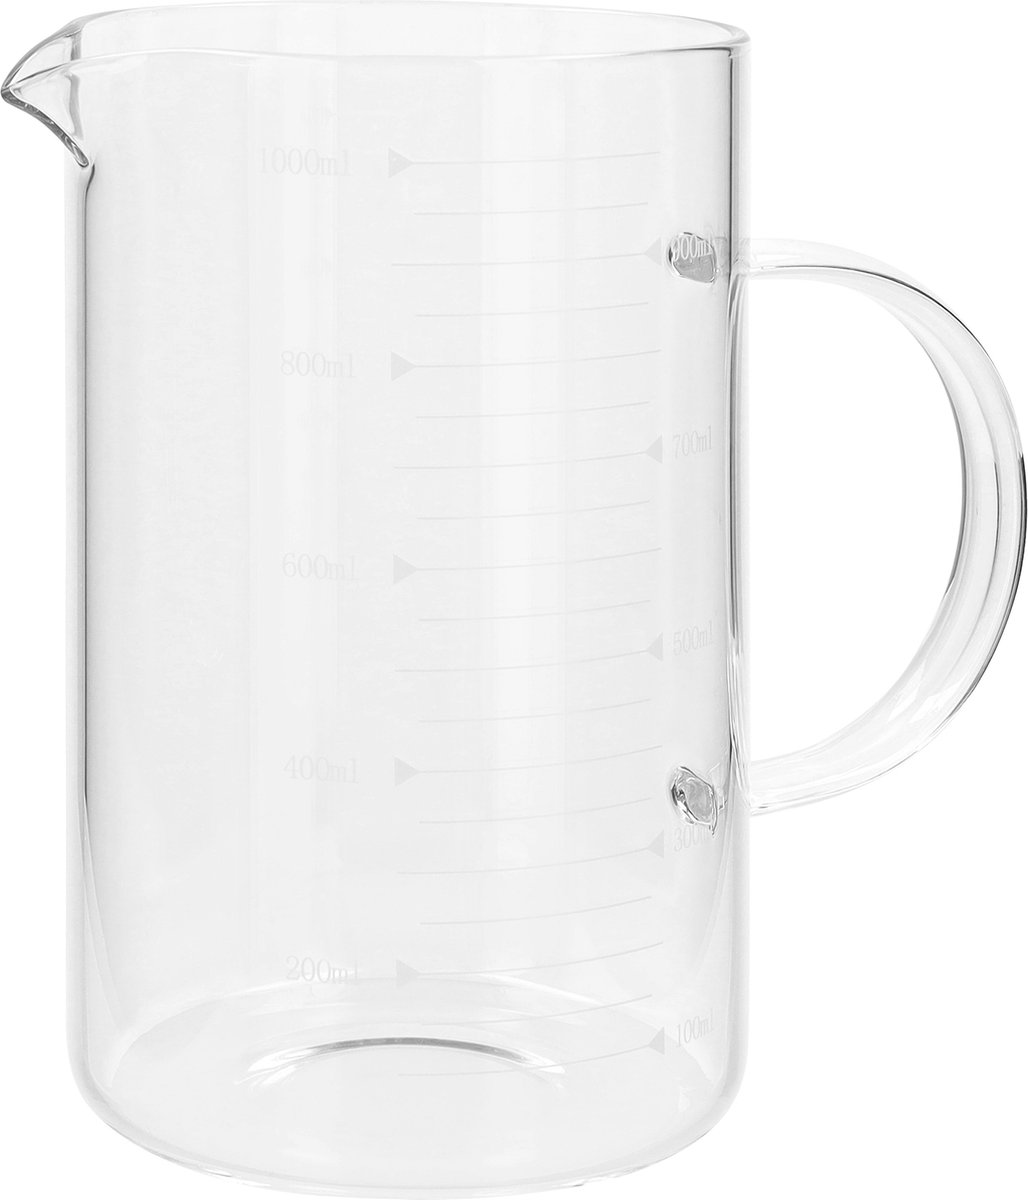 Krumble Maatbeker van glas - Maatbekers - Maat kannen - 1 liter - Meetbeker - Met meeteenheden - 1000 ml - Transparant - Glas - 10 x 10 x 16 cm